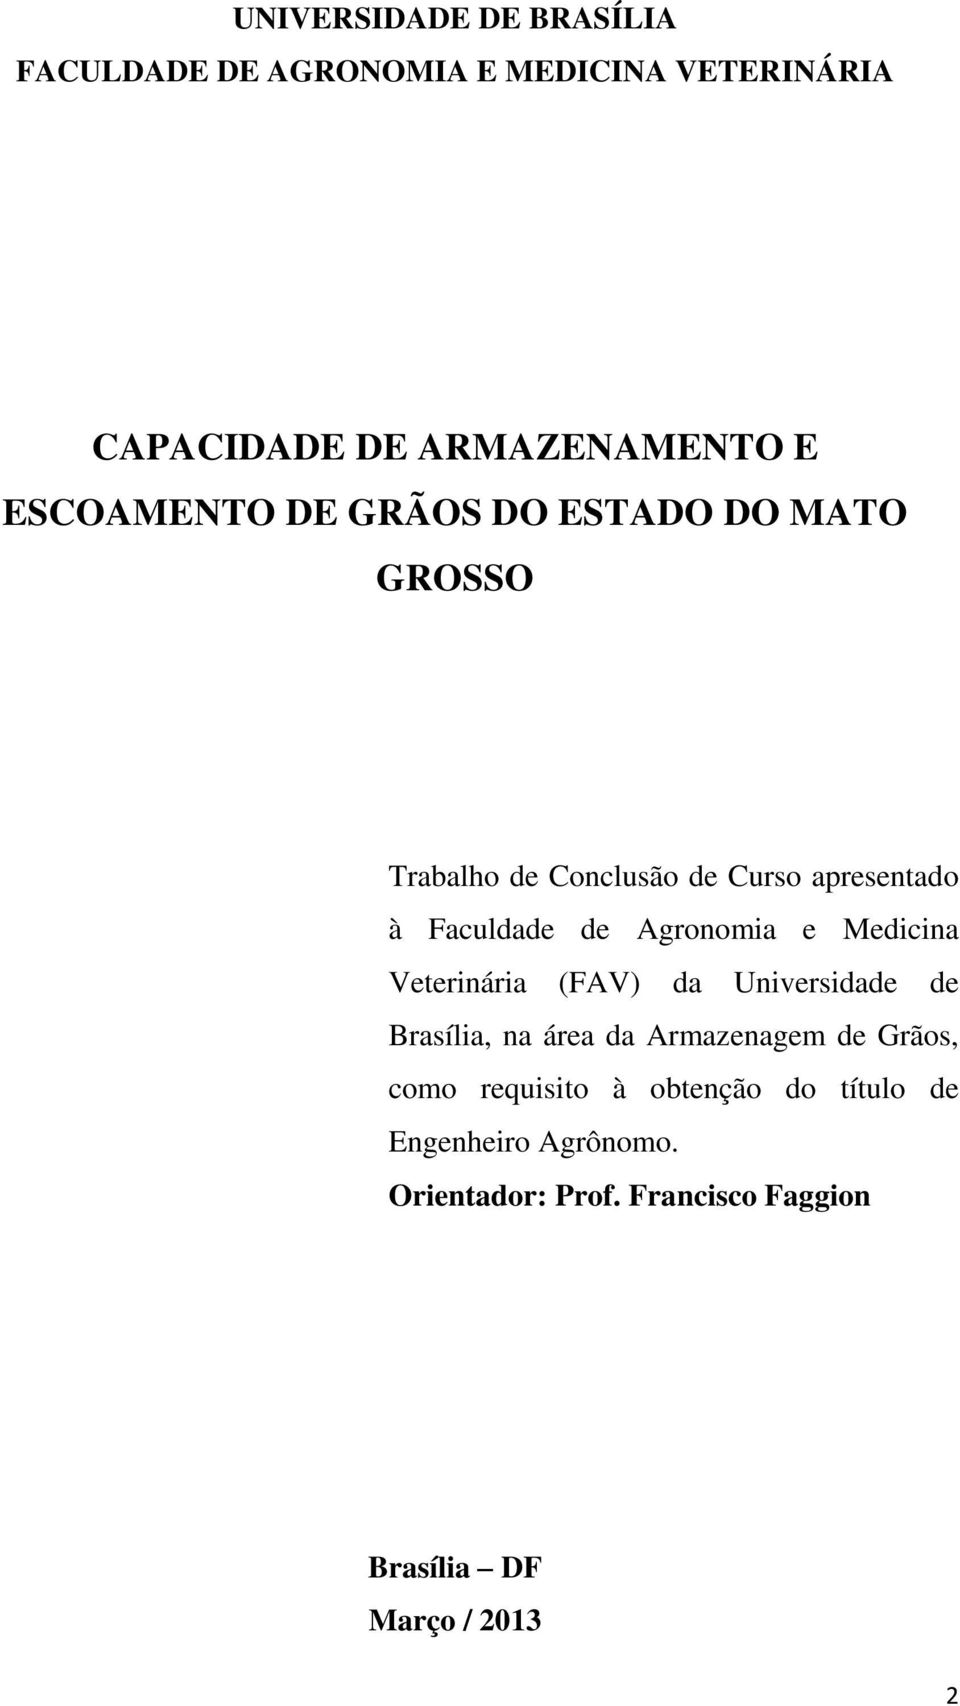 Agronomia e Medicina Veterinária (FAV) da Universidade de Brasília, na área da Armazenagem de Grãos, como